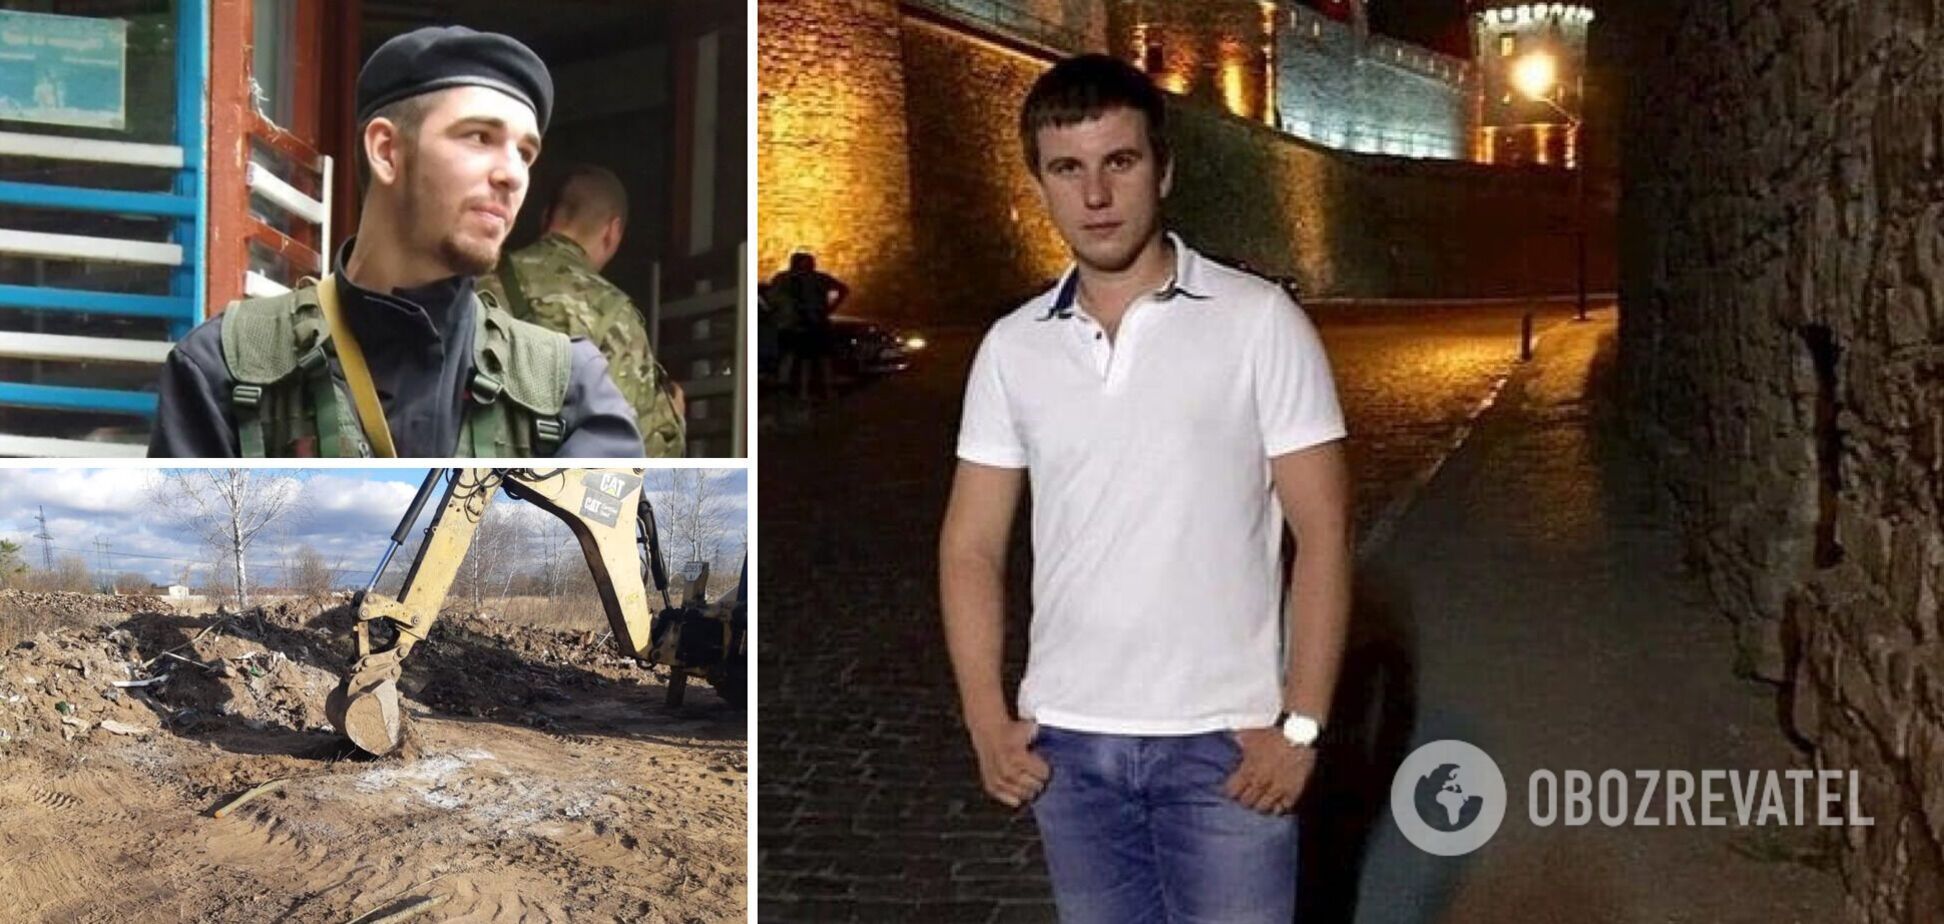 Через пять лет нашли тело Тараса Познякова: что известно об убийстве водителя BlaBlaCar под Киевом